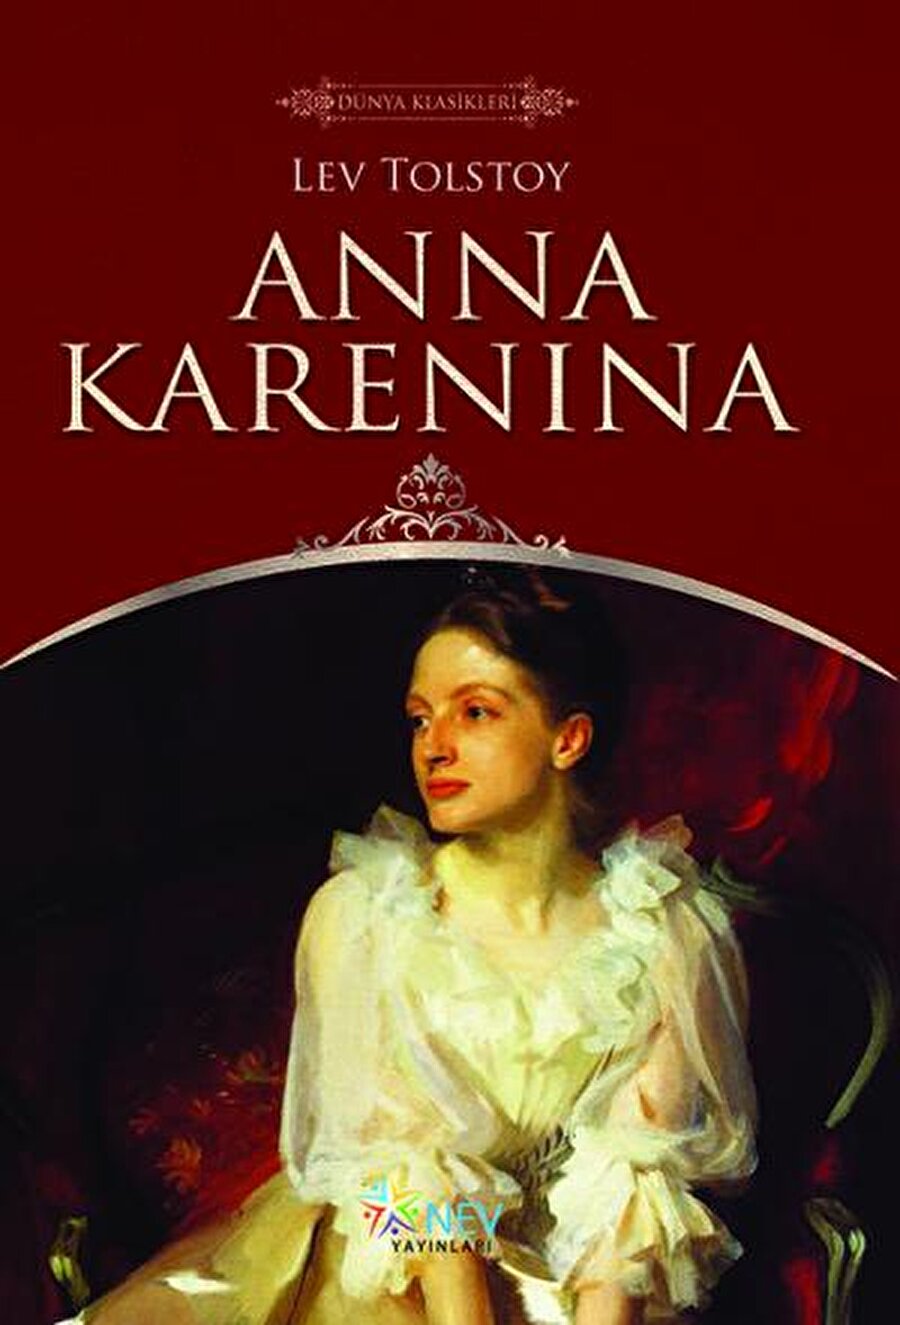 Tolstoy-Anna Karenina

                                    Anna Karenina, 19. yüzyıl Rus toplumunun ruhsal dalgalanmalarına çarpıcı bir aşk ve ihanet anlatısıyla ışık tutan bir başyapıt. Güzelliği ve nezaketiyle çevresinde hayranlık uyandıran Anna Karenina'nın mutsuz ve monoton bir evliliği vardır. Üst düzey bir devlet memuru olan Aleksey Aleksandroviç ile evliliğinde tek tesellisi oğludur. Ağabeyi ile yengesinin aralarını düzeltmek için gittiği Moskova'da yakışıklı ve genç kont Vronski ile tanışması, Anna'nın hayatında dönüm noktası olur. Tolstoy, Anna Karenina'da sıradışı bir gözlem gücü ile aşk, evlilik, ihanet gibi temaların izini sürerken roman sanatına yepyeni ve uzun soluklu bir boyut katar. Modern dünya edebiyatının otoritelerince gelmiş geçmiş en iyi romanlardan biri olarak kabul edilen Anna Karenina, güncelliğini daima koruyacak bir eser.
                                